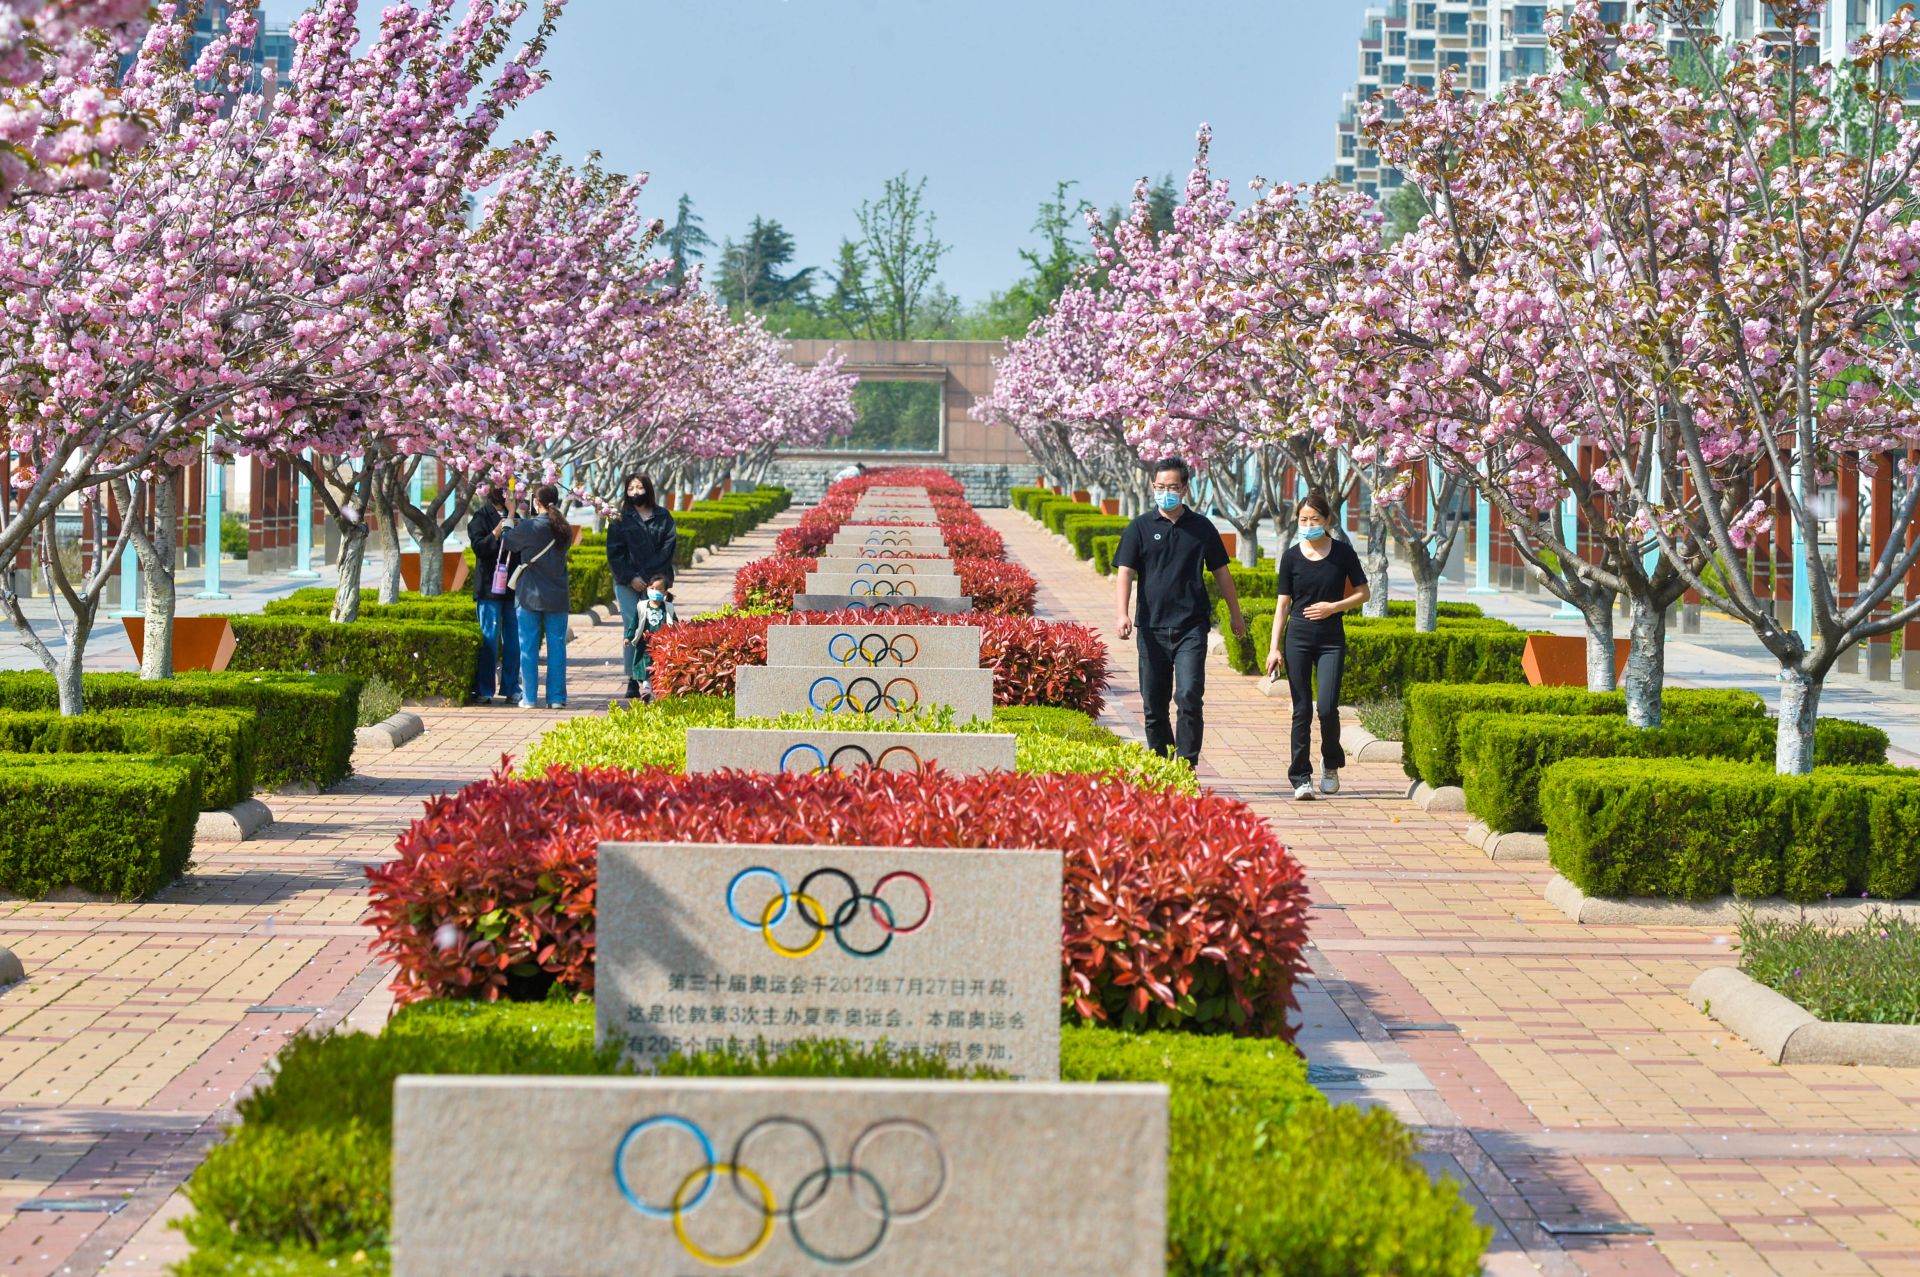 奥林匹克雕塑园里也有一条樱花大道樱花挂满枝头各色樱花争奇斗艳